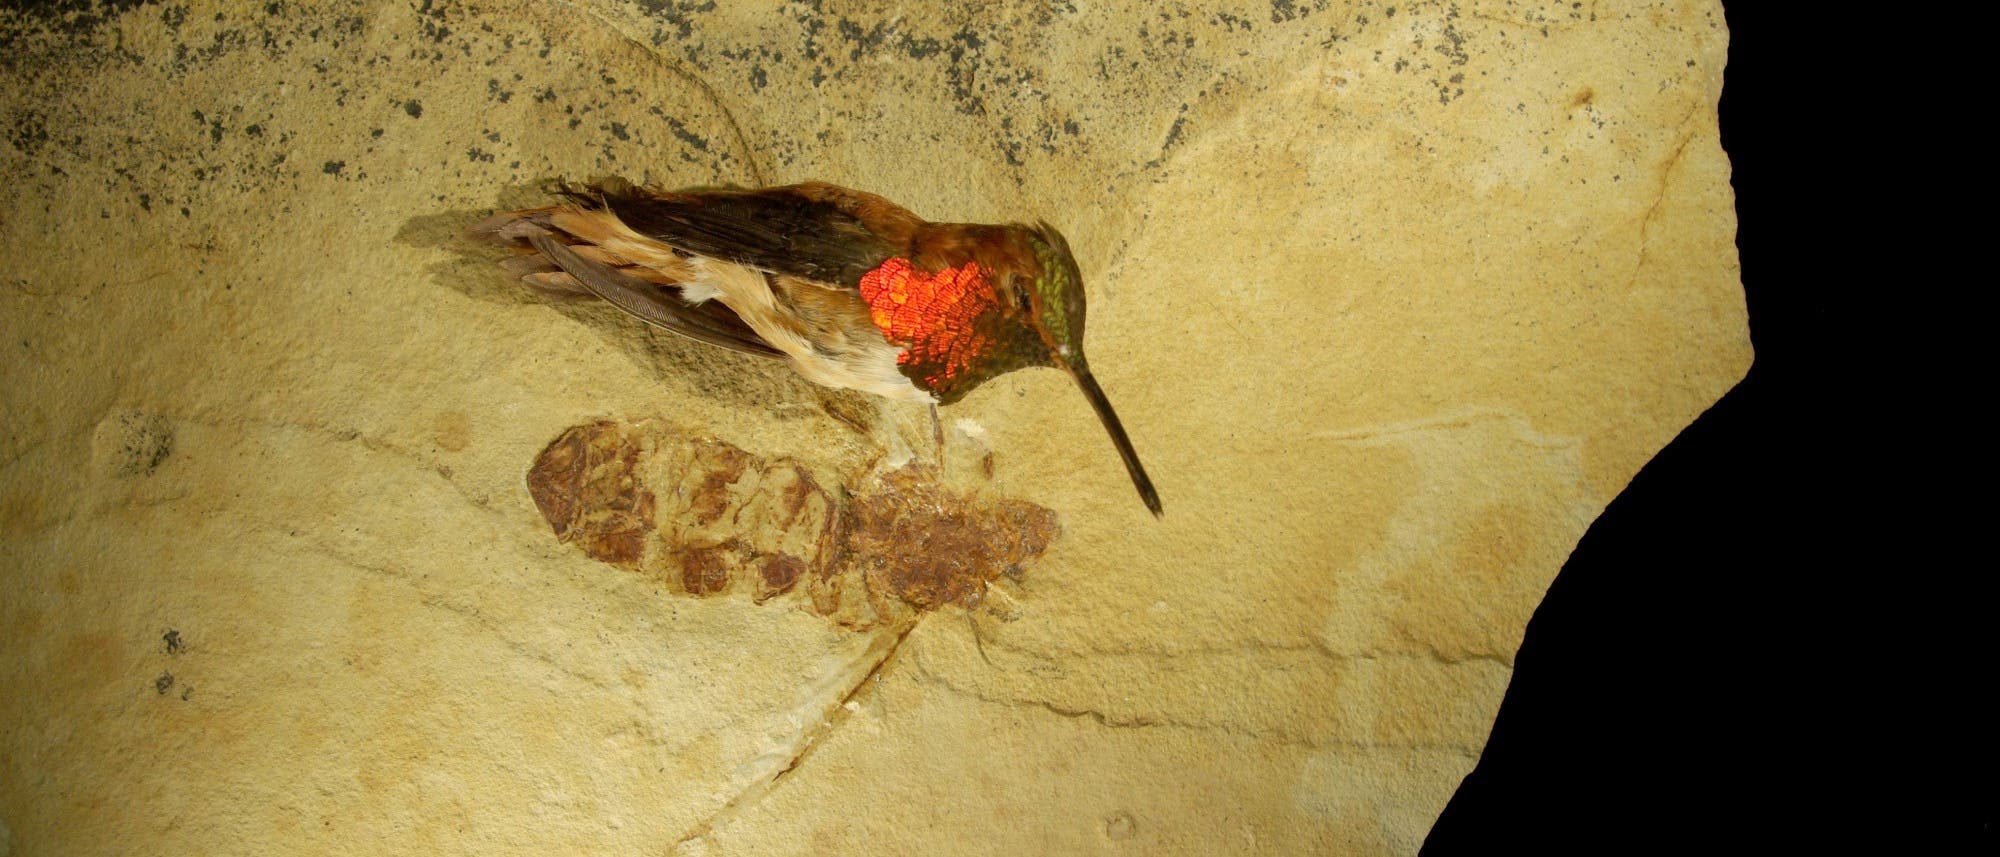 Präparat eines Kolibris wurde zum Größenvergleich neben das Fossil der Riesenameise gelegt.